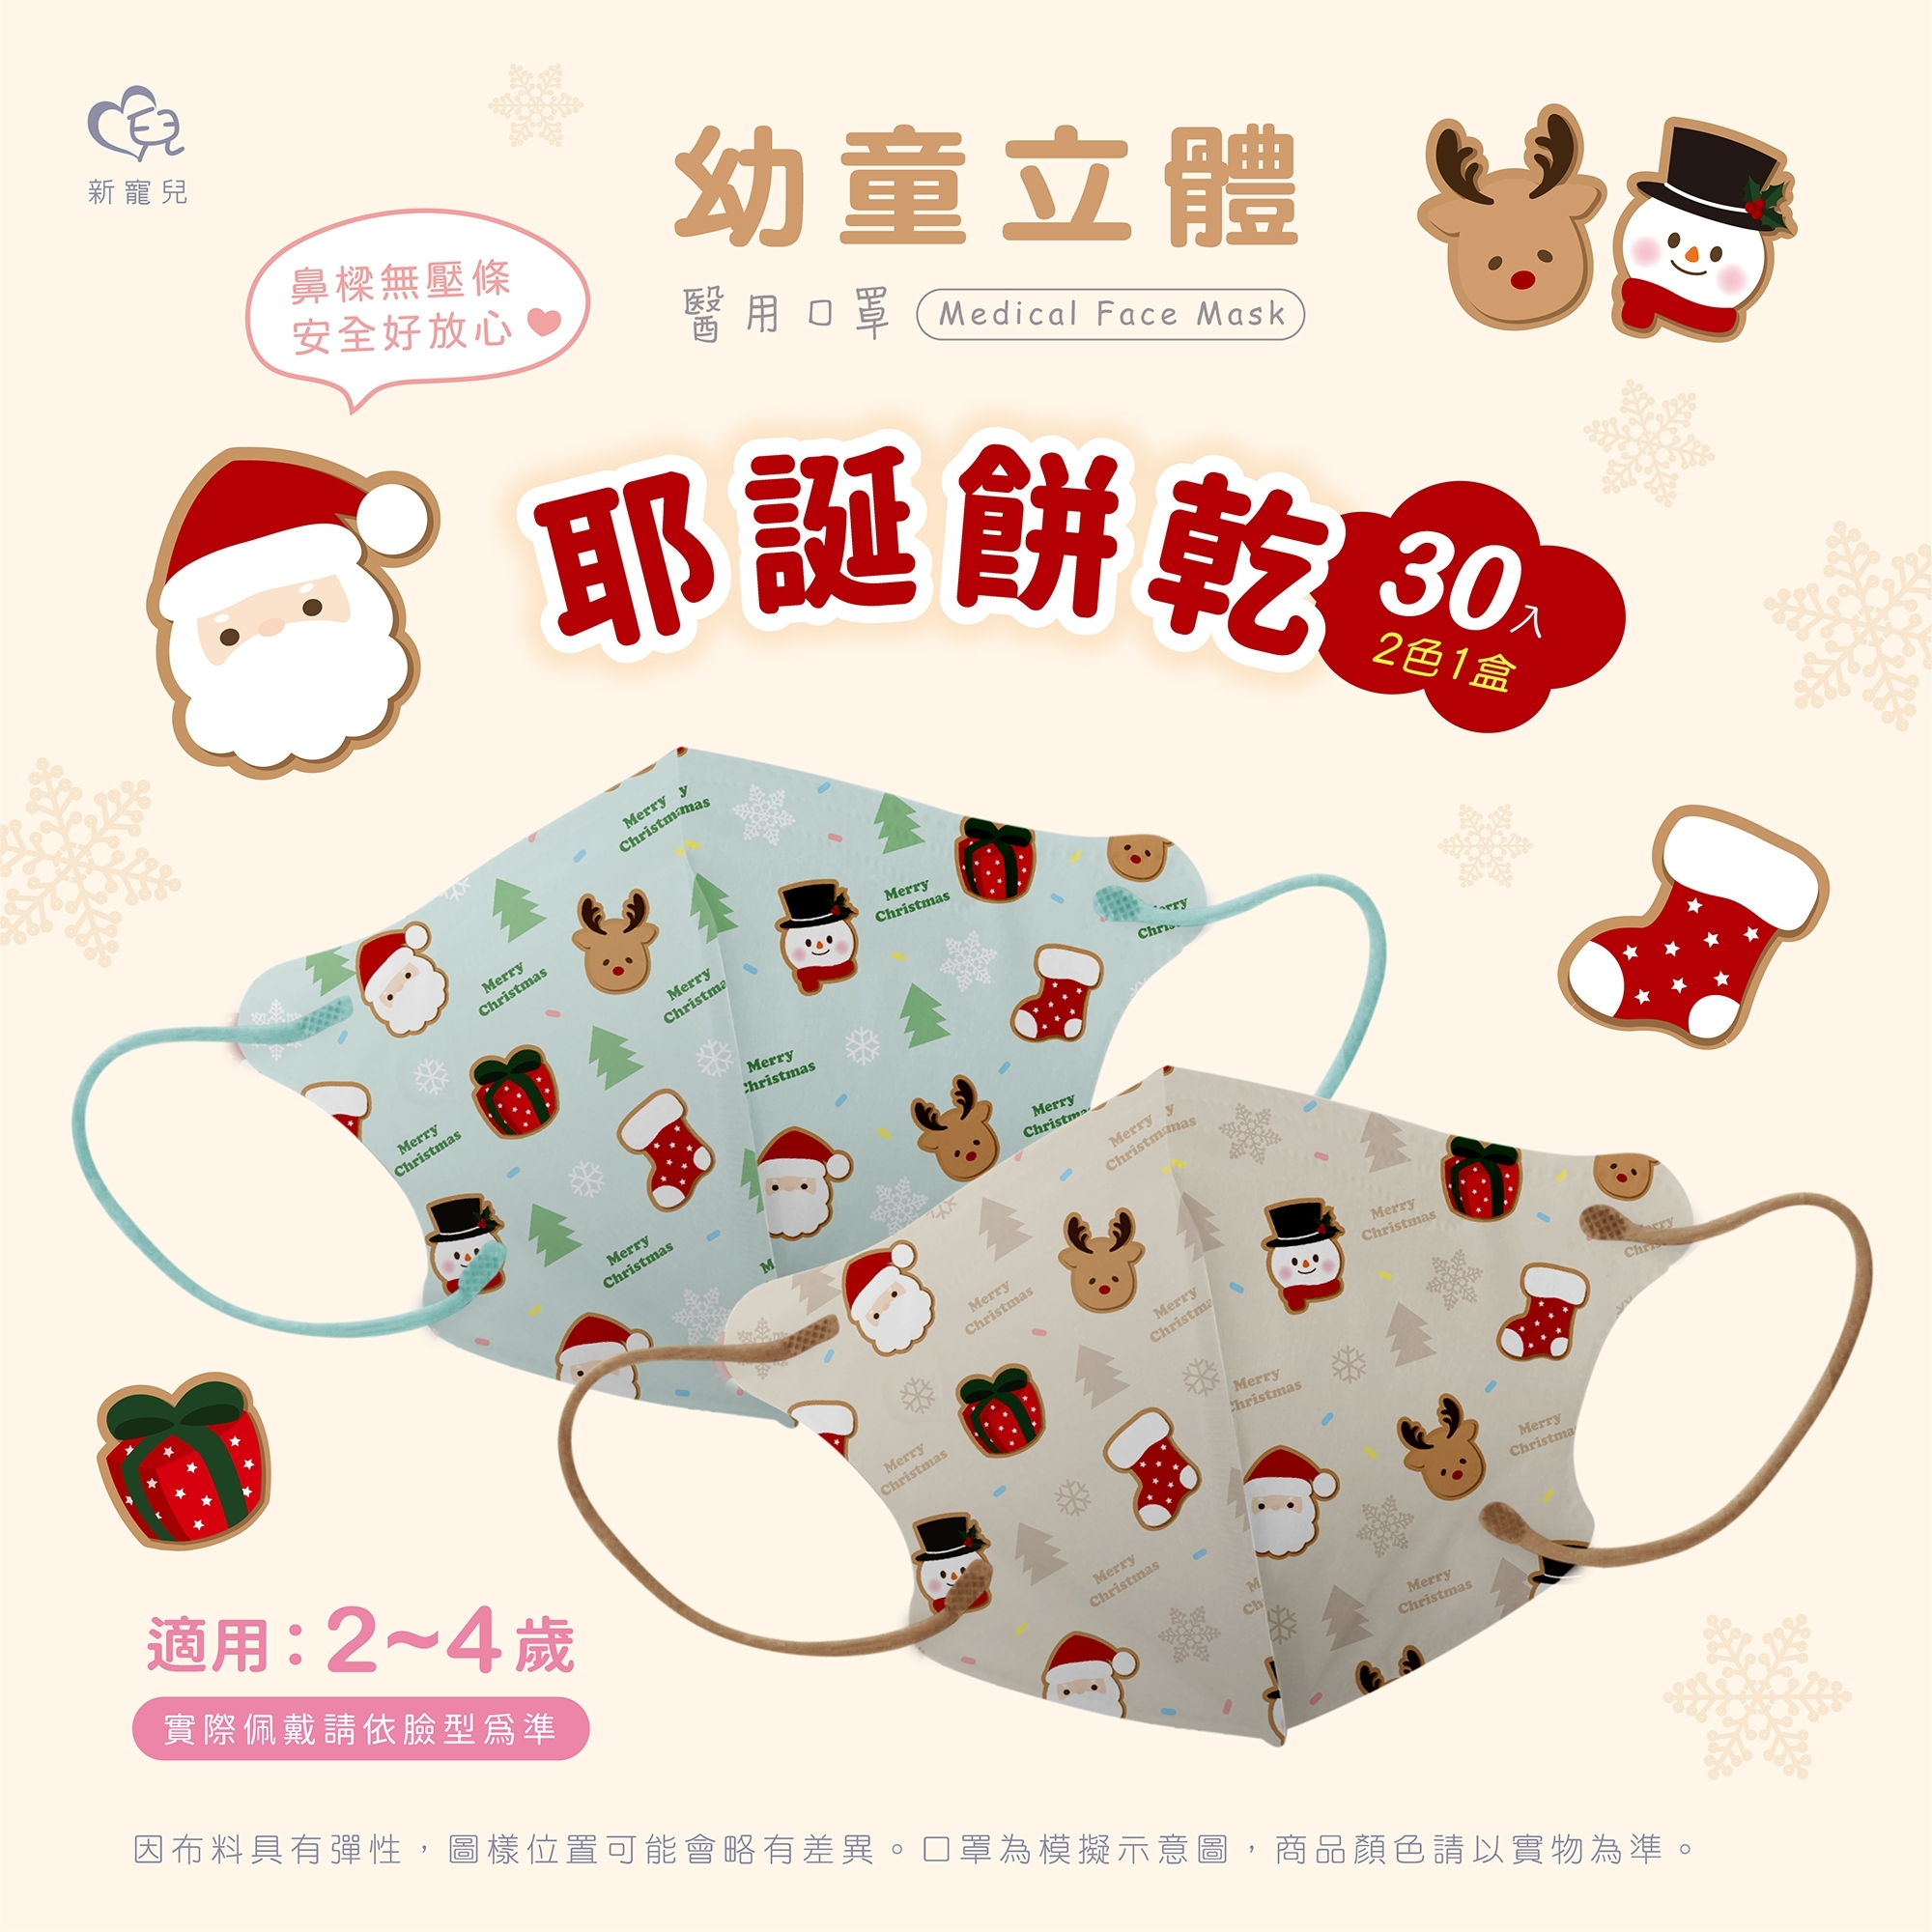 【盛籐】聖誕節3D立體醫療口罩(30入/盒) 幼幼/兒童/成人